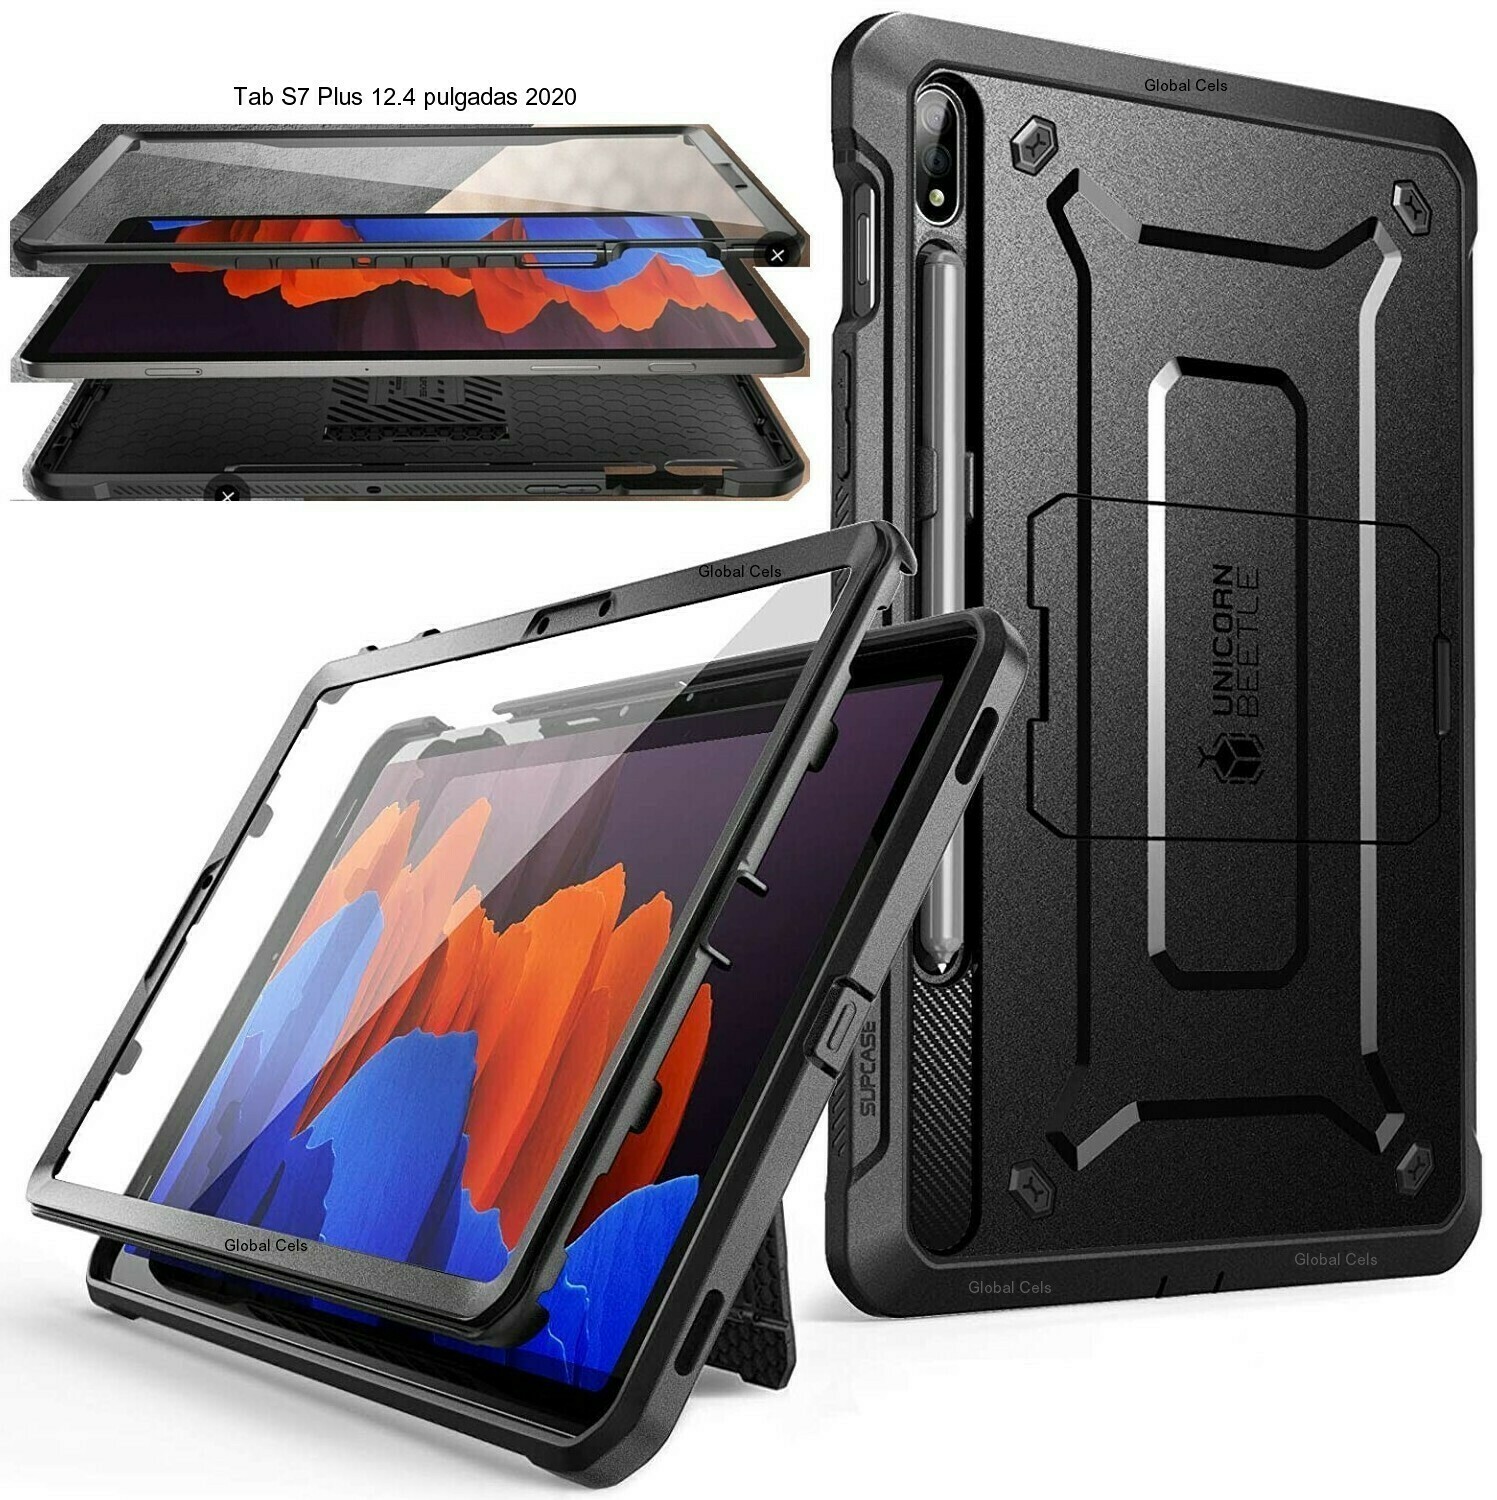 Case Protector Galaxy Tab S7 Plus 12.4 pulgadas 2020 Negro c/ Parante c/ Mica